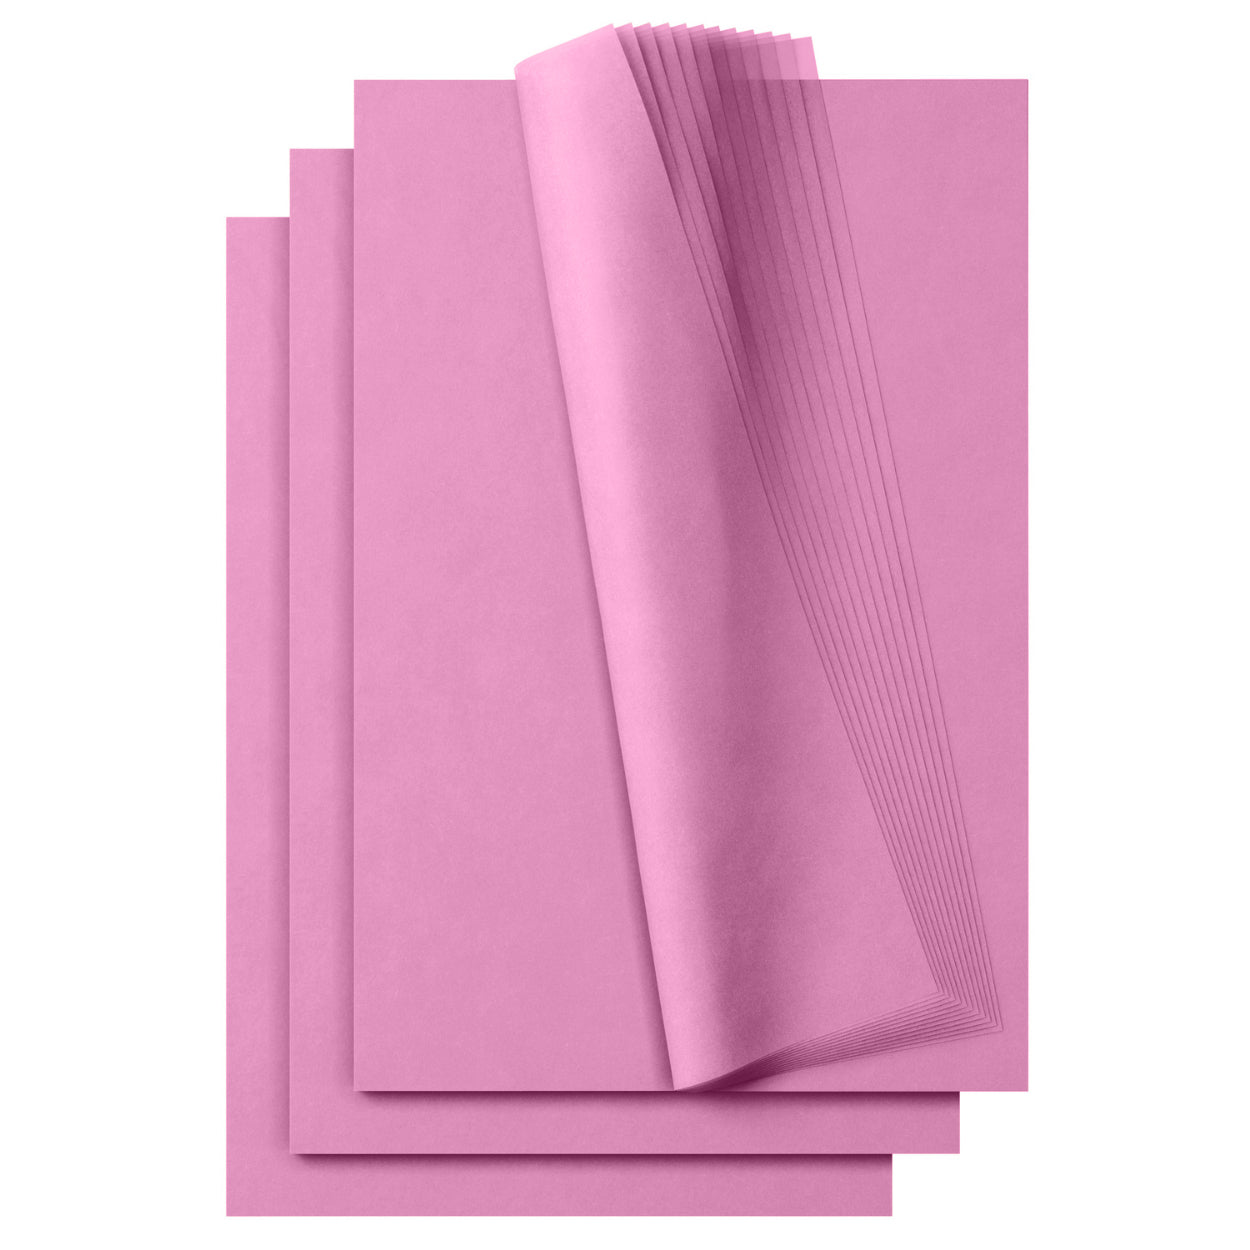 Tissue Paper Sheets - 20 x 30, Light Pink - ULINE - Bundle of 480 Sheets - S-7097LTPNK